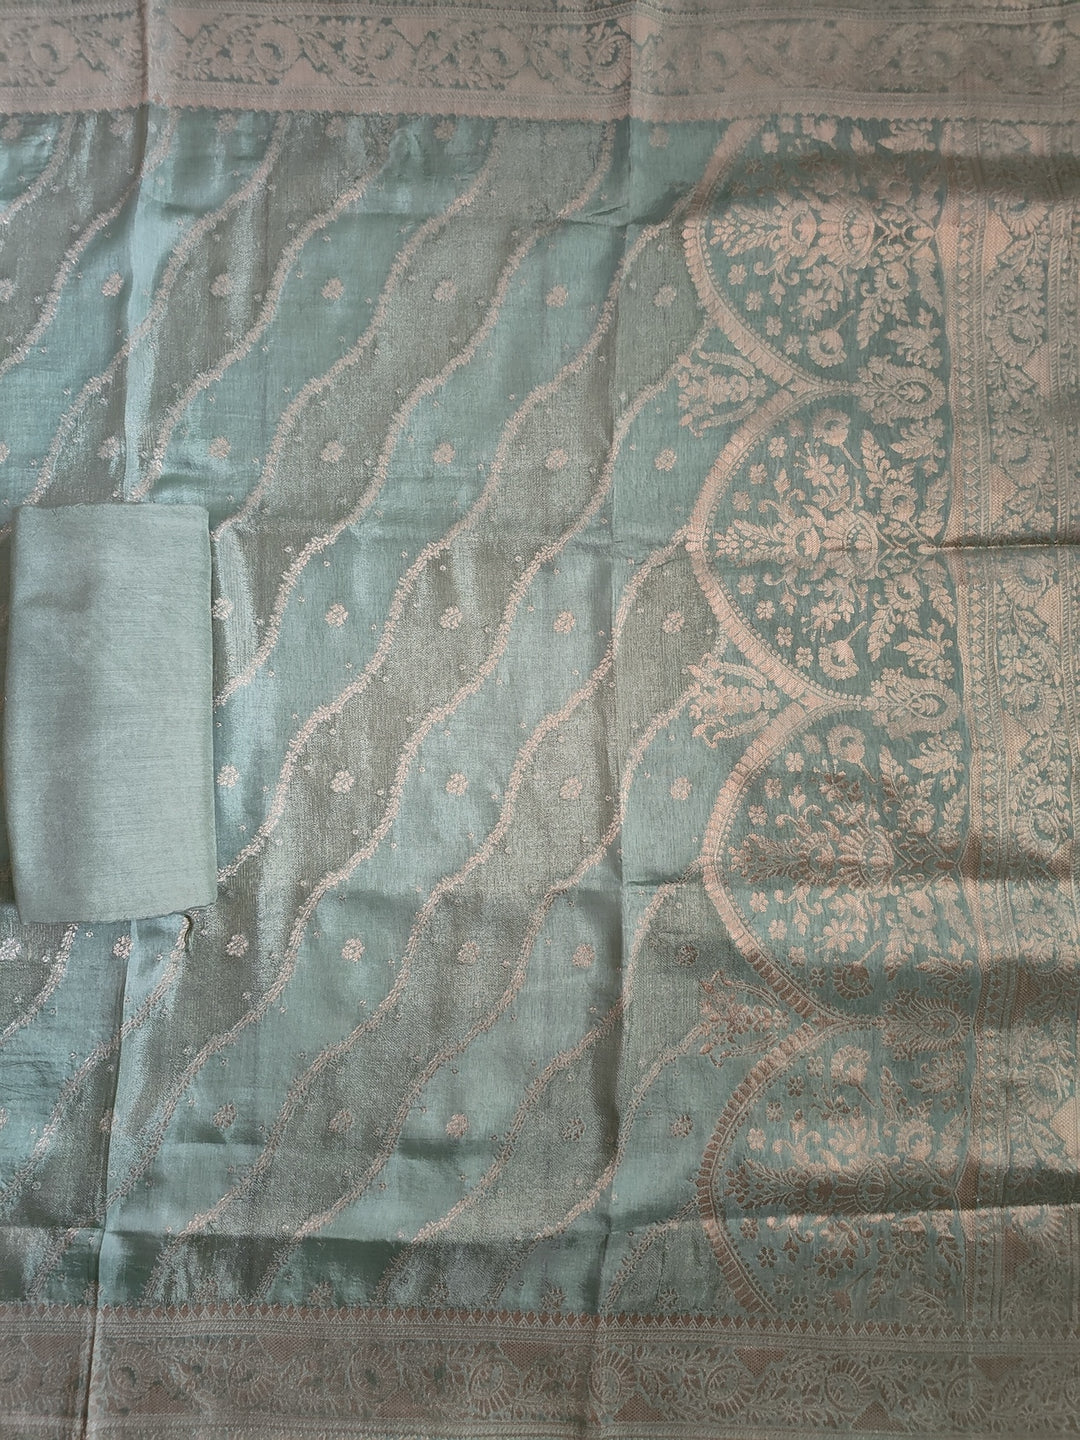 Shimmer Silk Embroidered Unstitched Salwar Suit